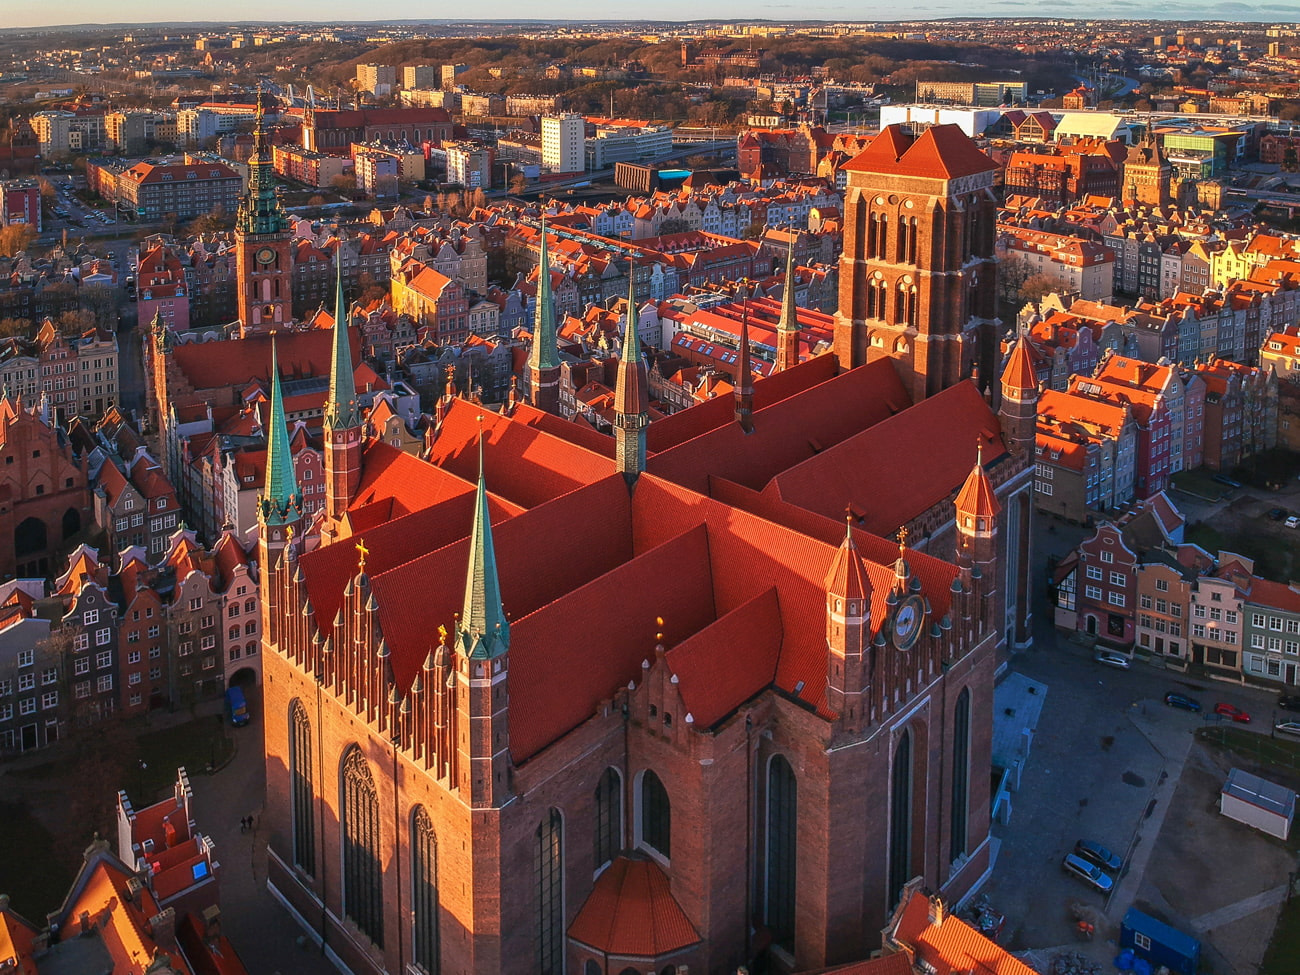 St. Mary's Church, Gdańsk